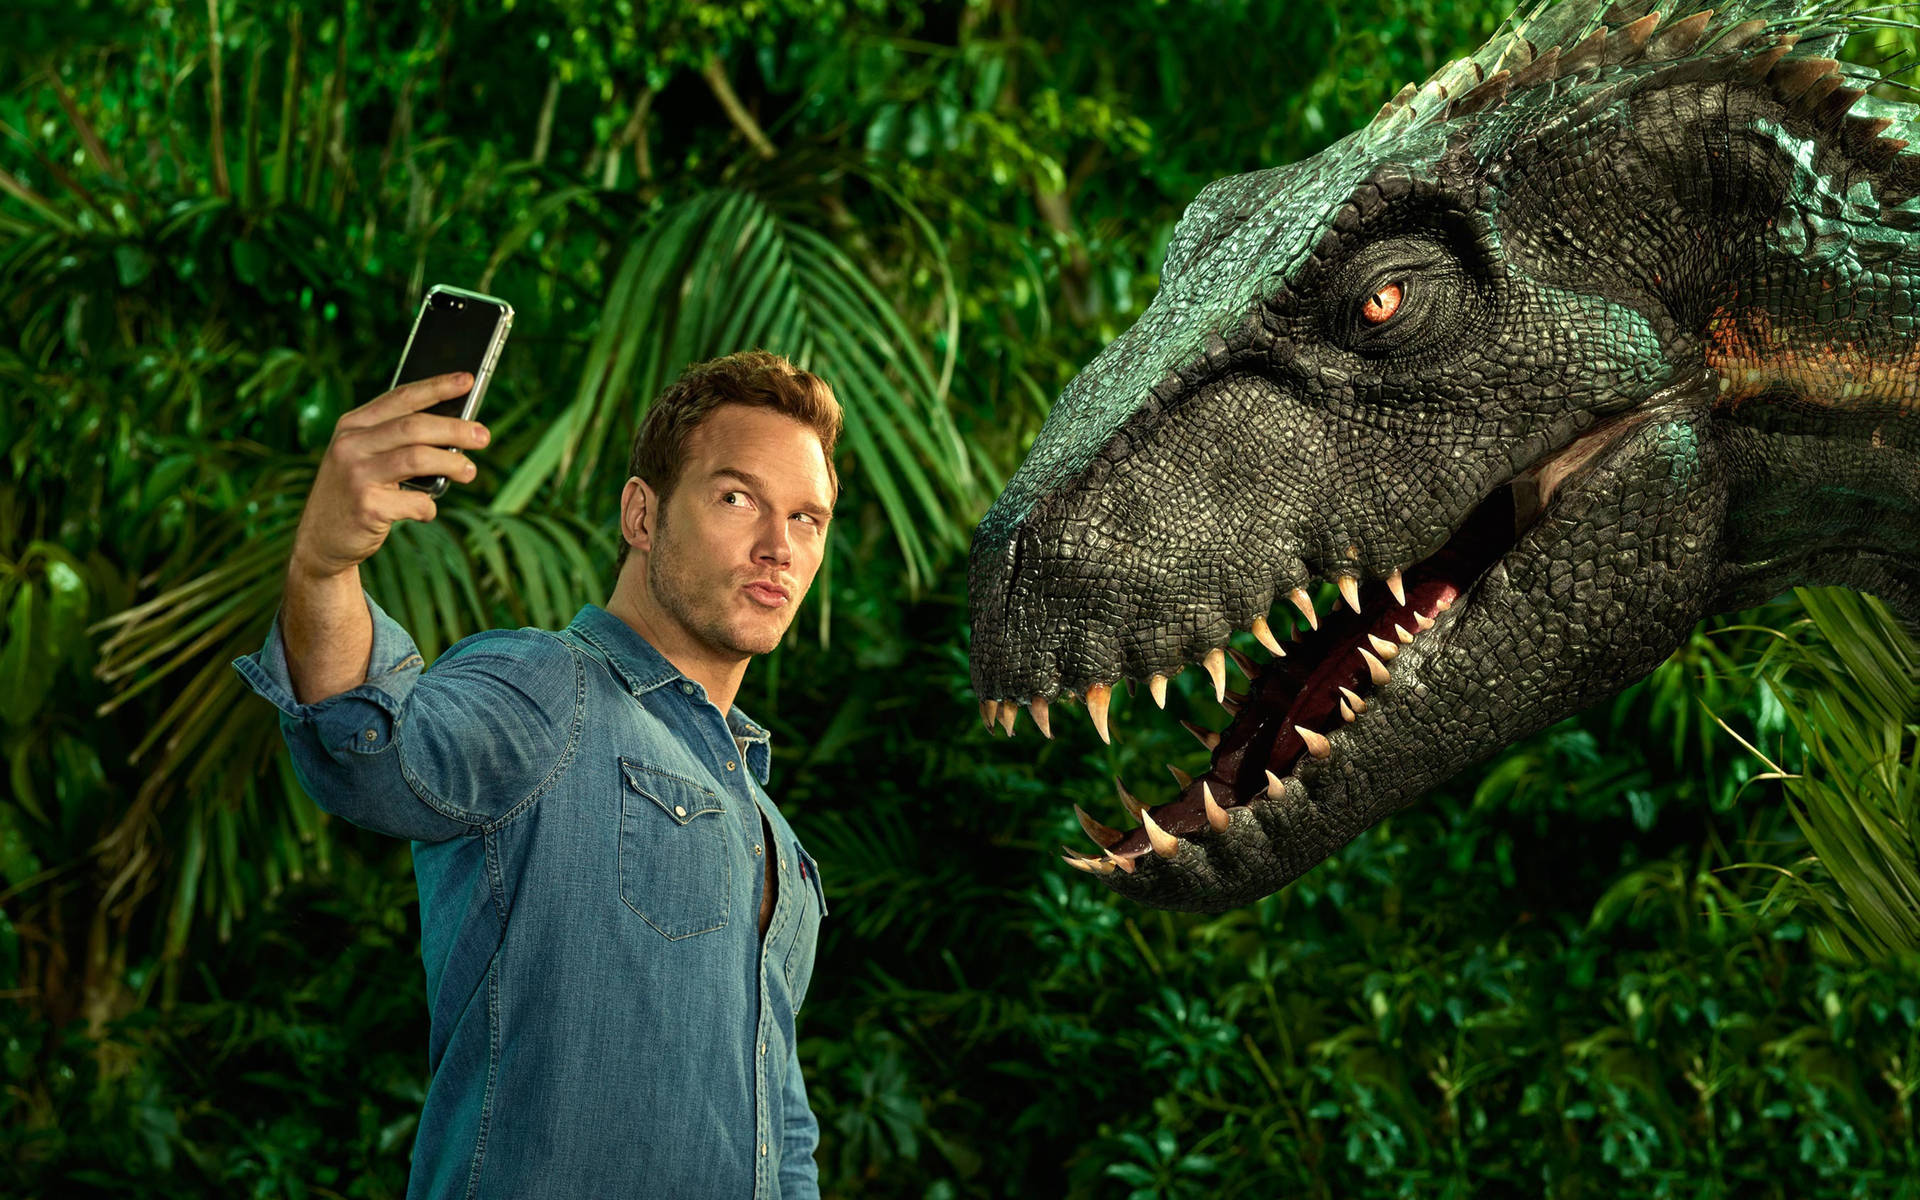 Chris Pratt Selfie With Dinosaur